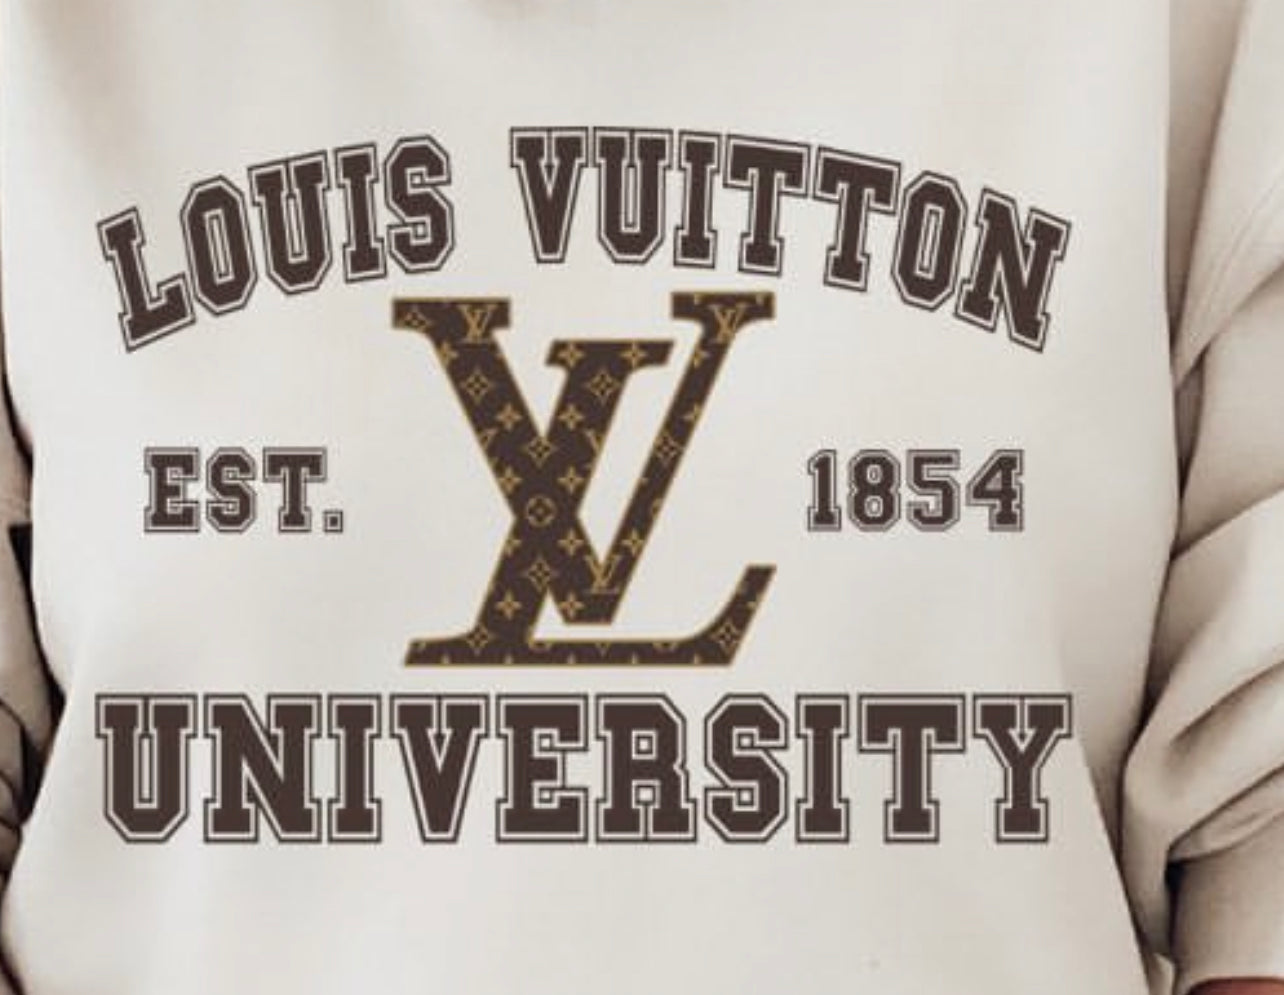 Louis Vuitton LV Hoodie Hooded Sweatshirt Sweater T-Shirt Tee